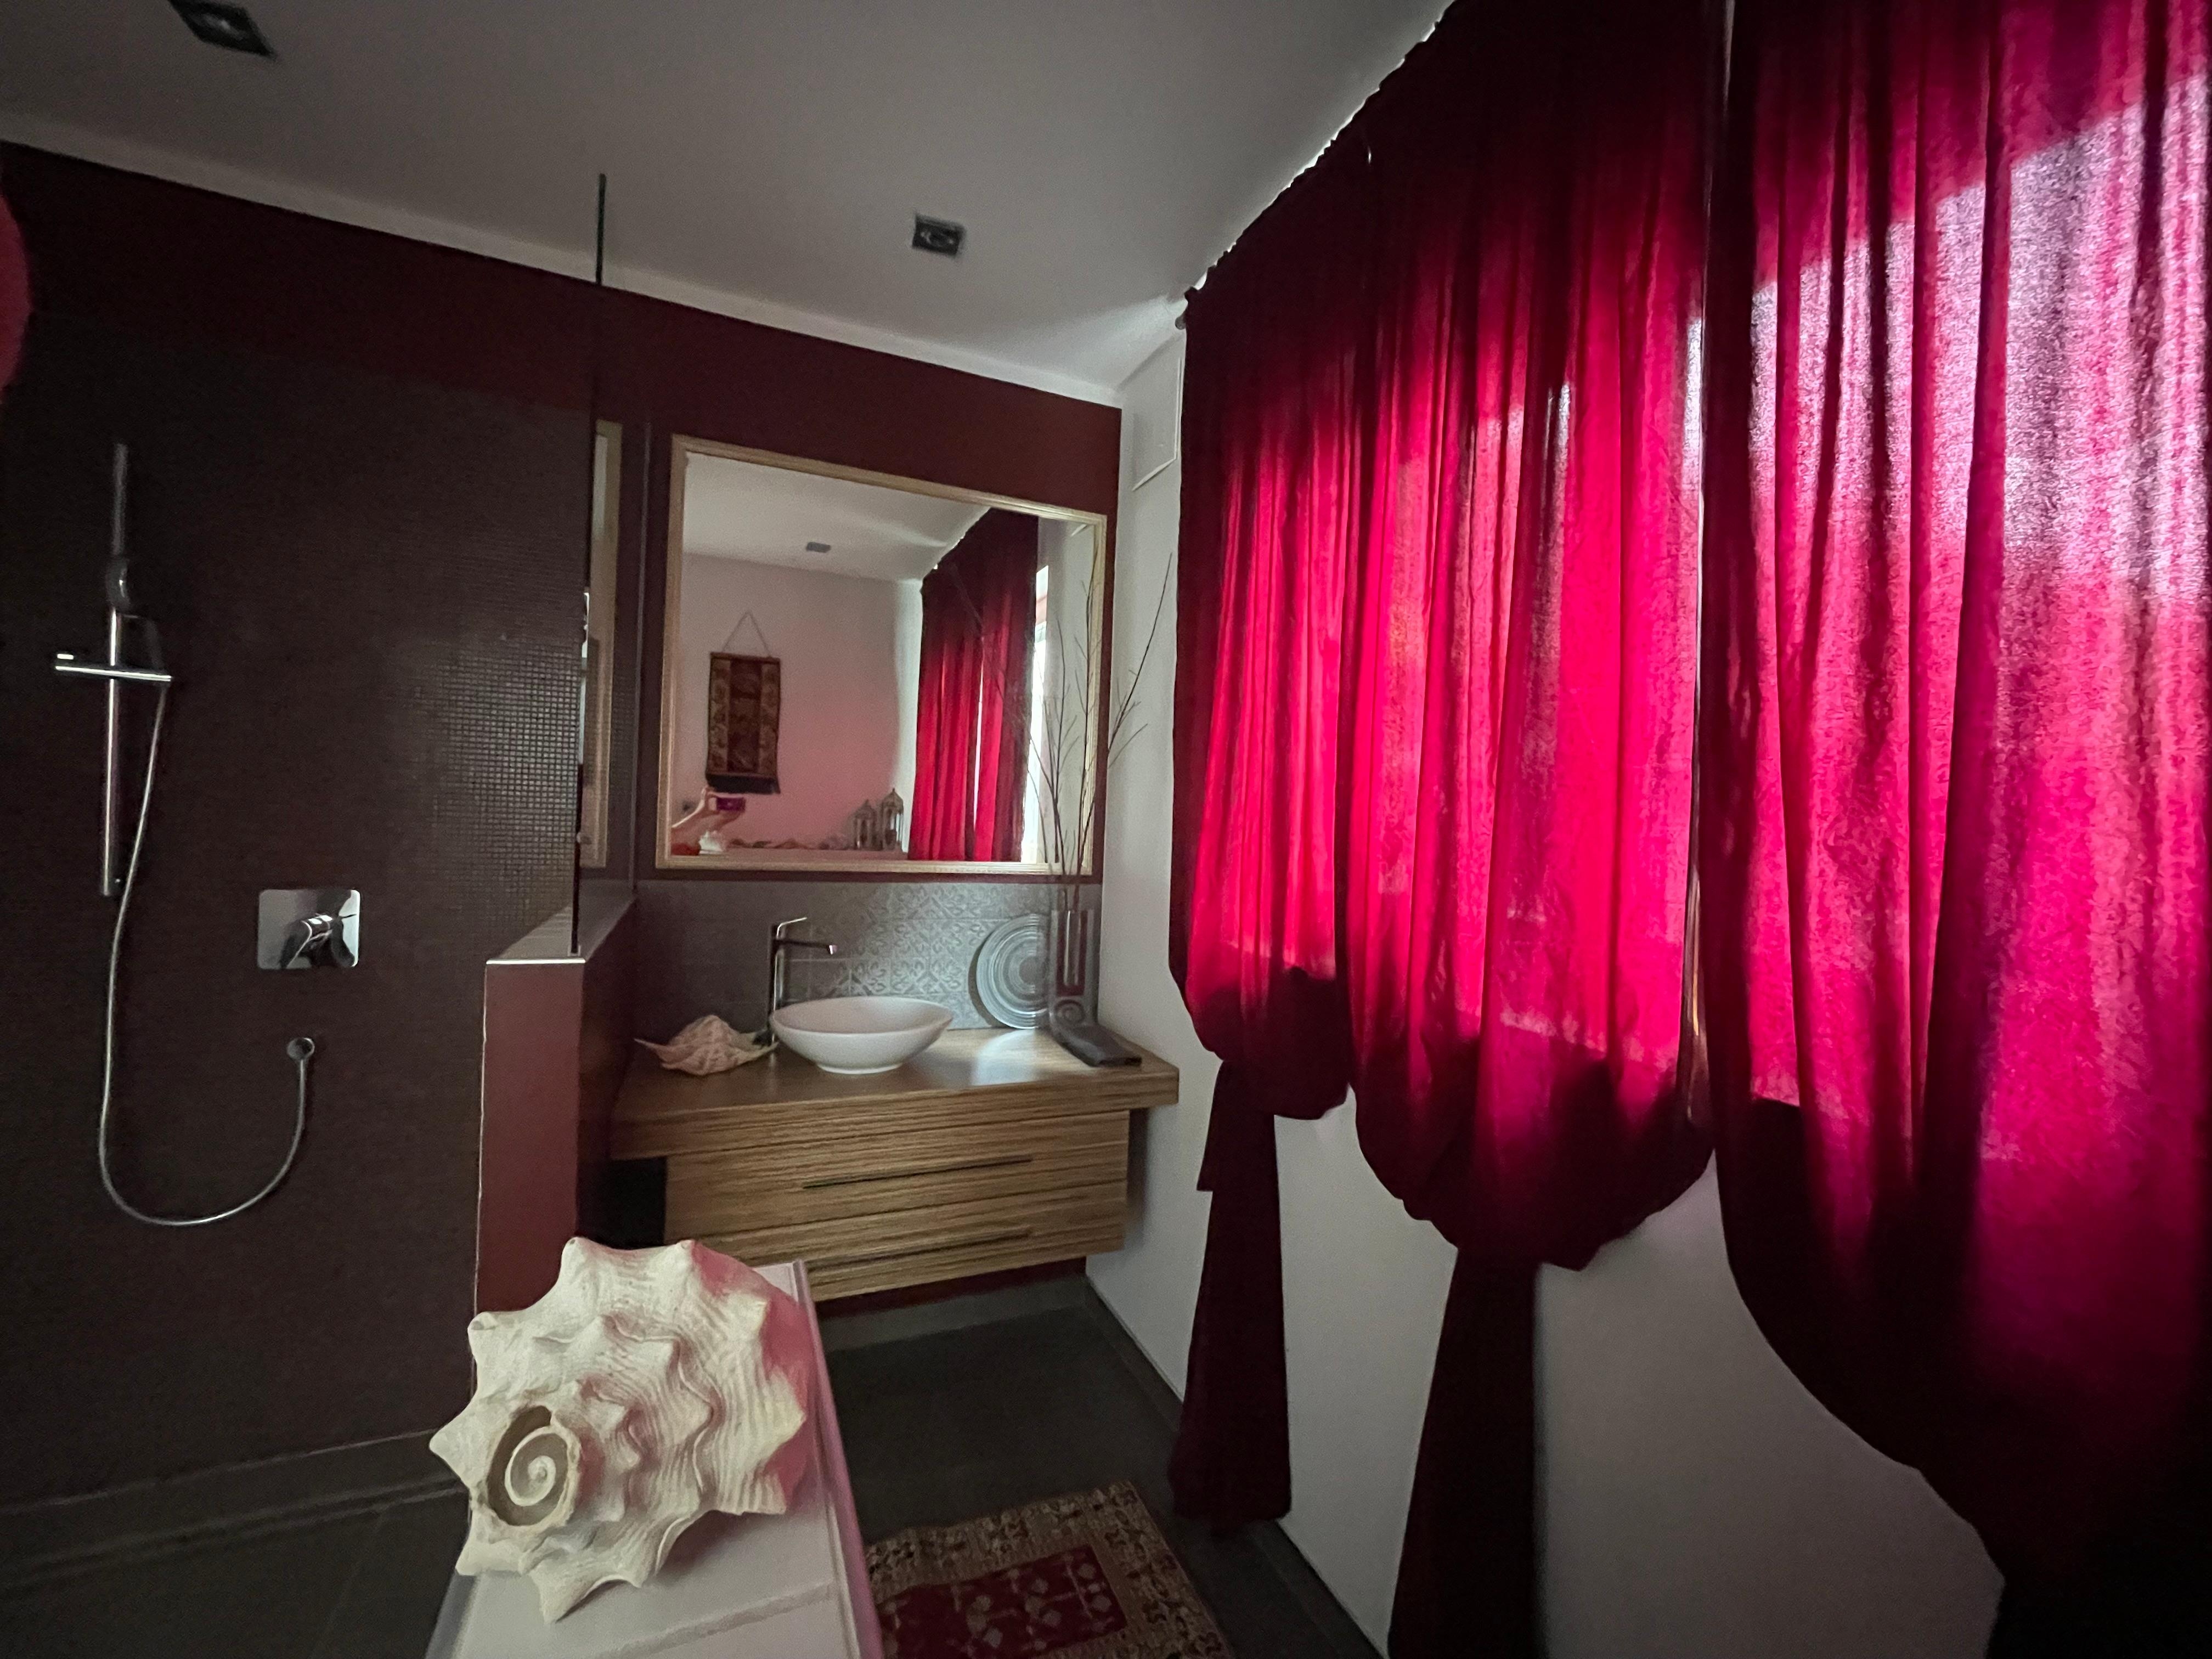 Das dunkle Rot im #Gästebad verleiht eine kraftvolle, elegante und sinnliche Atmosphäre #badezimmer #baddesign #dunkelrot